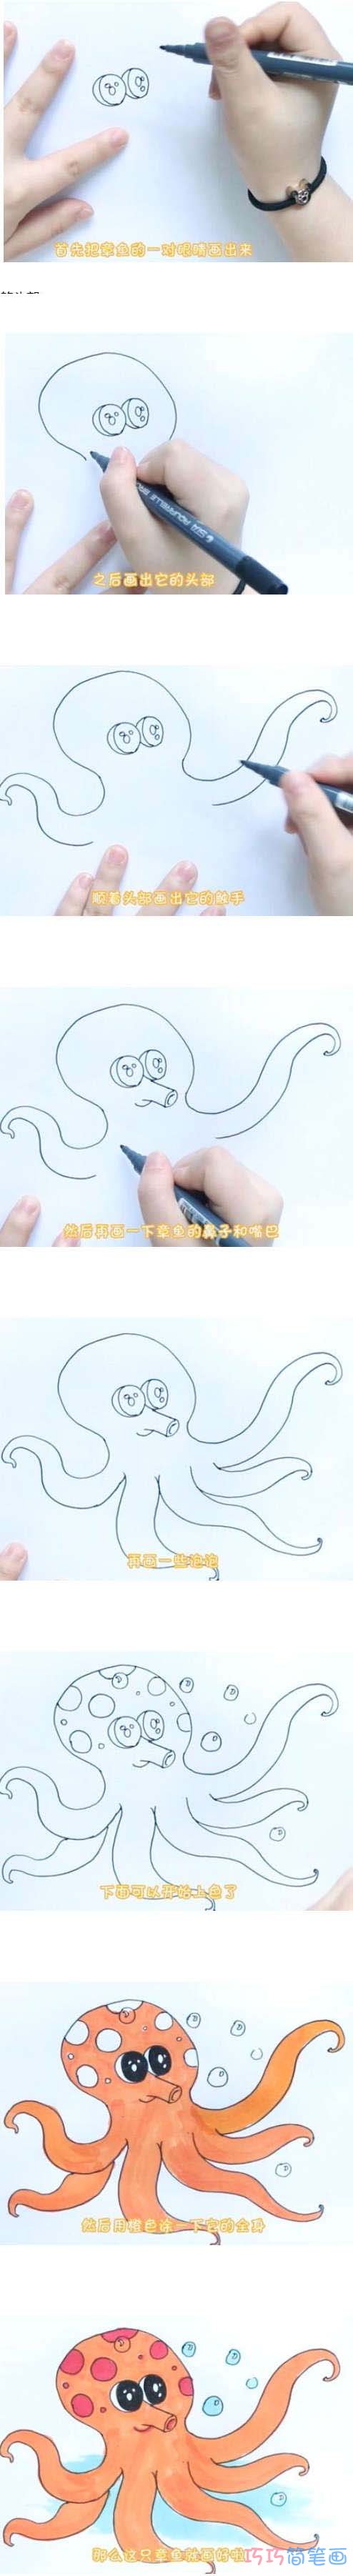 教你如何画章鱼简笔画步骤教程涂颜色